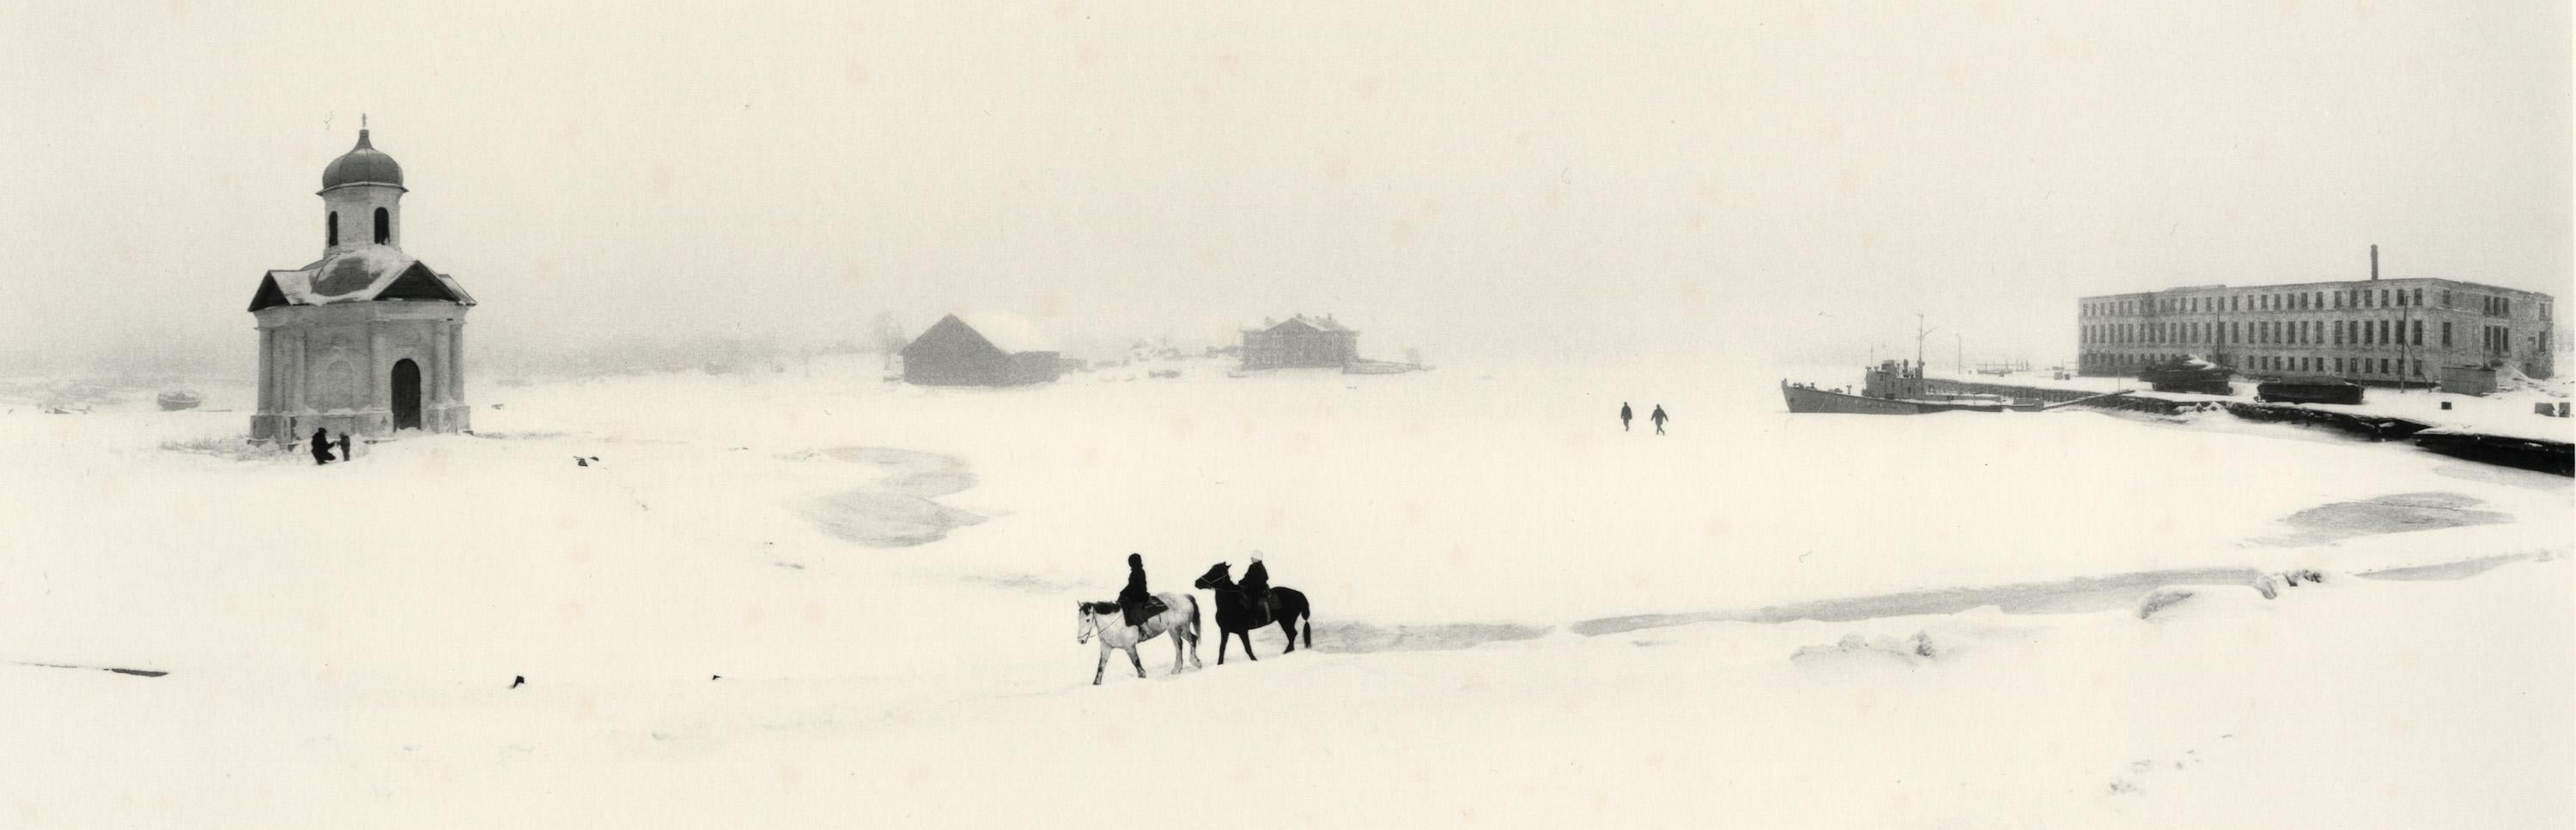 Pentti Sammallahti Black and White Photograph – Solovki, Weißes Meer, Russland (Winterszene, Menschen zu Pferd)